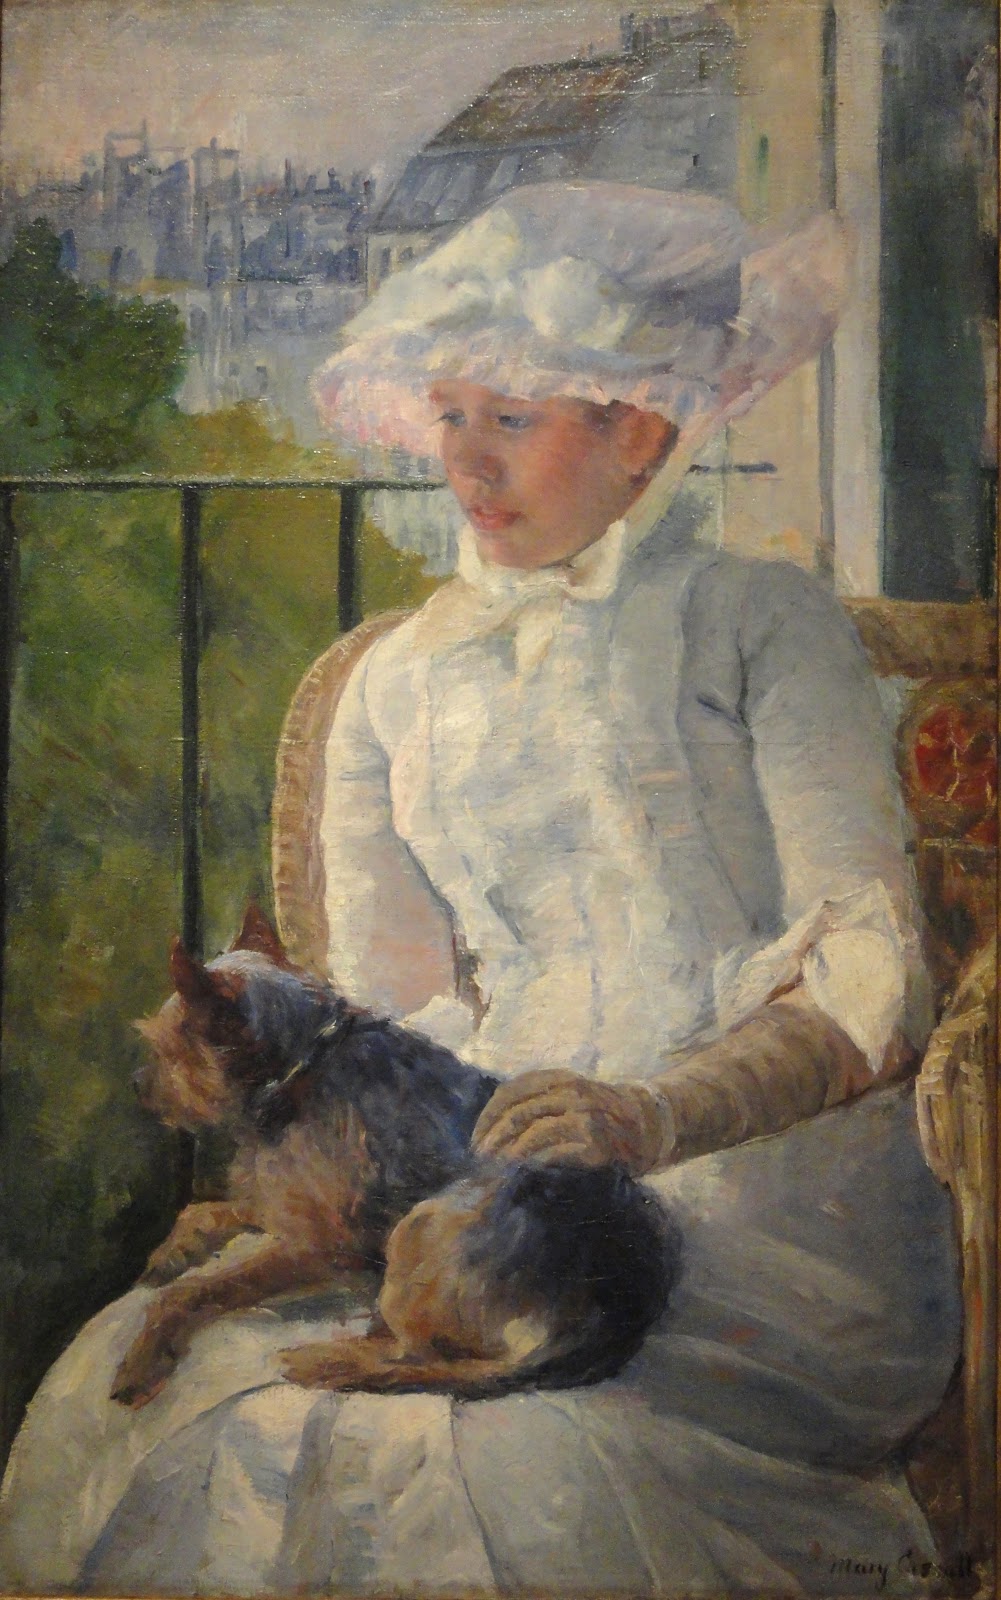 Mary+Cassatt-1844-1926 (230).JPG